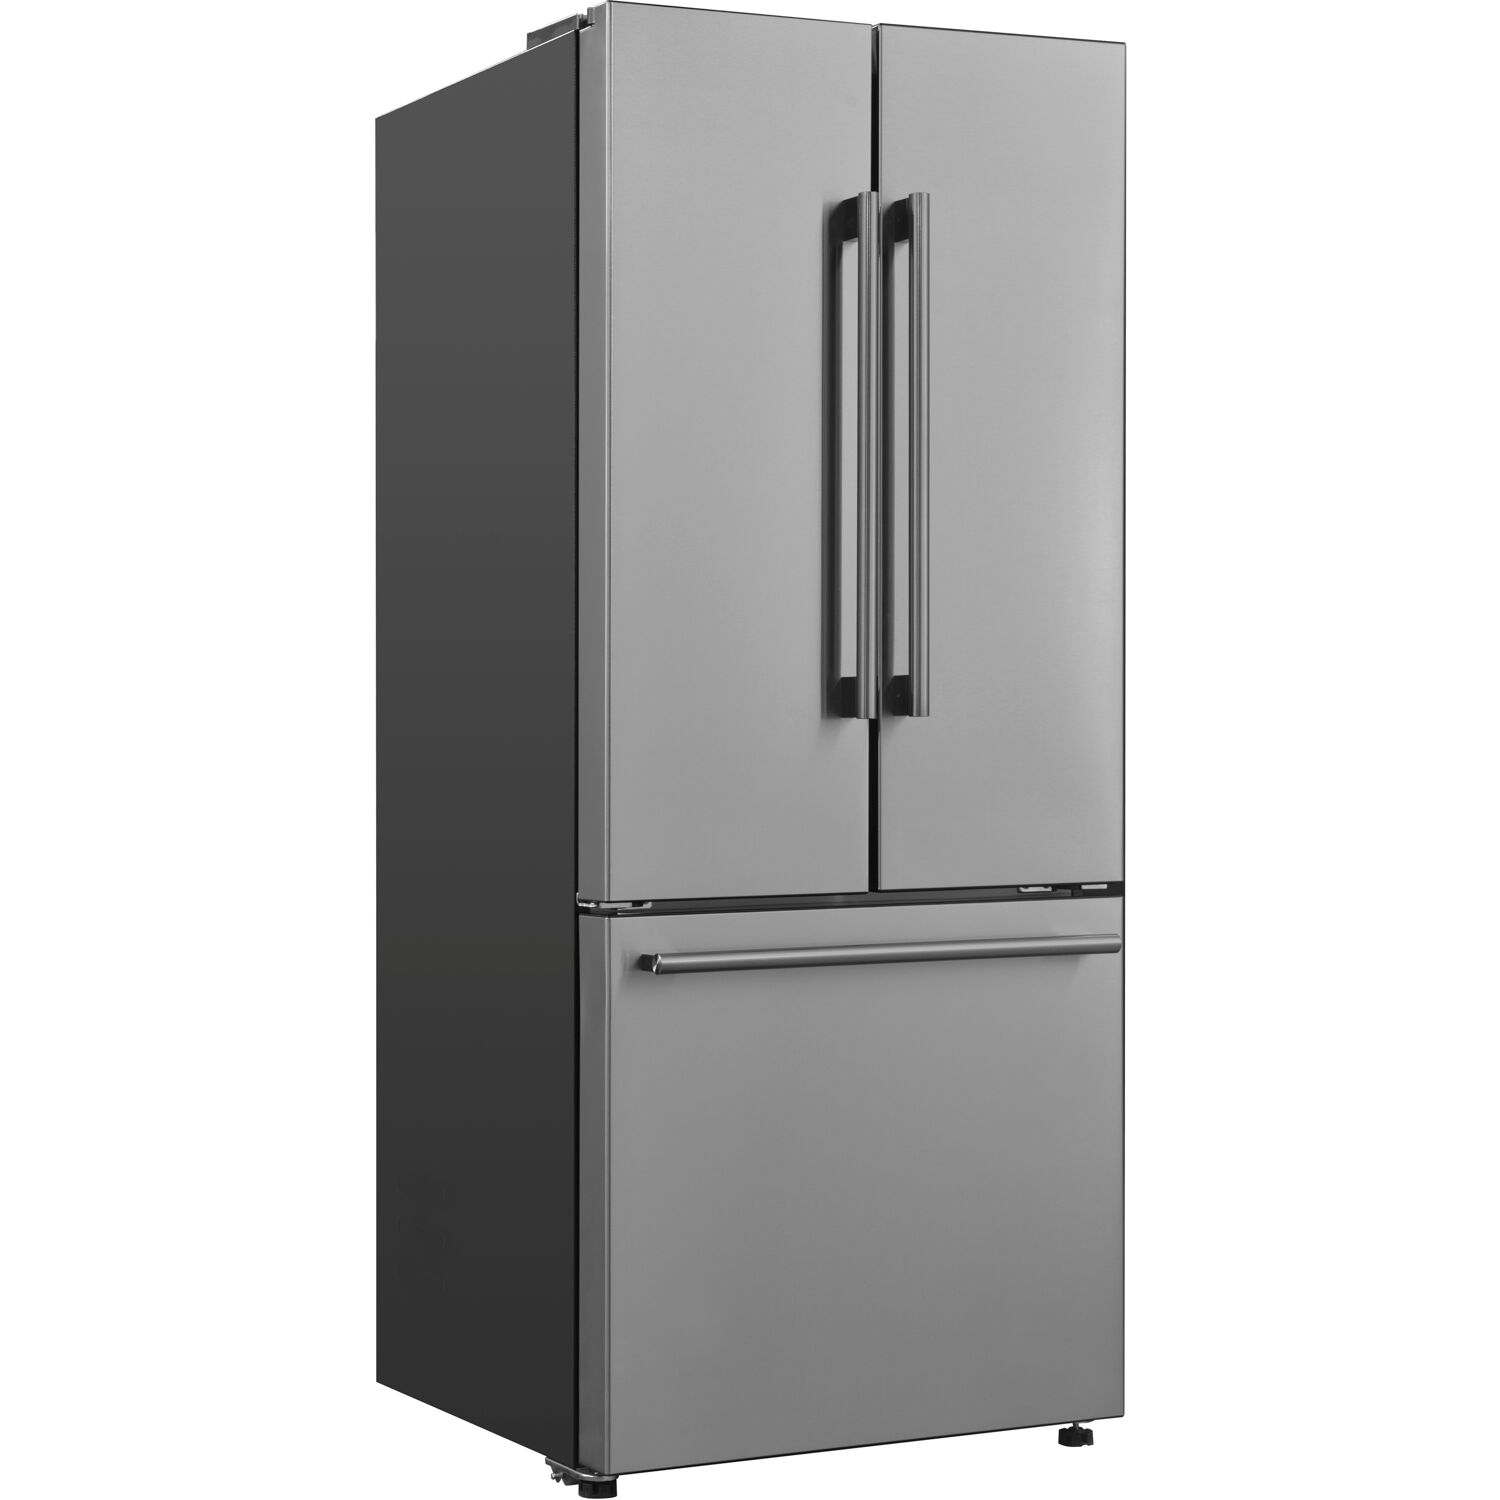 Galanz 16-Cu. Ft. 3-Door French Door Refrigerator, Stainless Steel - image 2 of 12